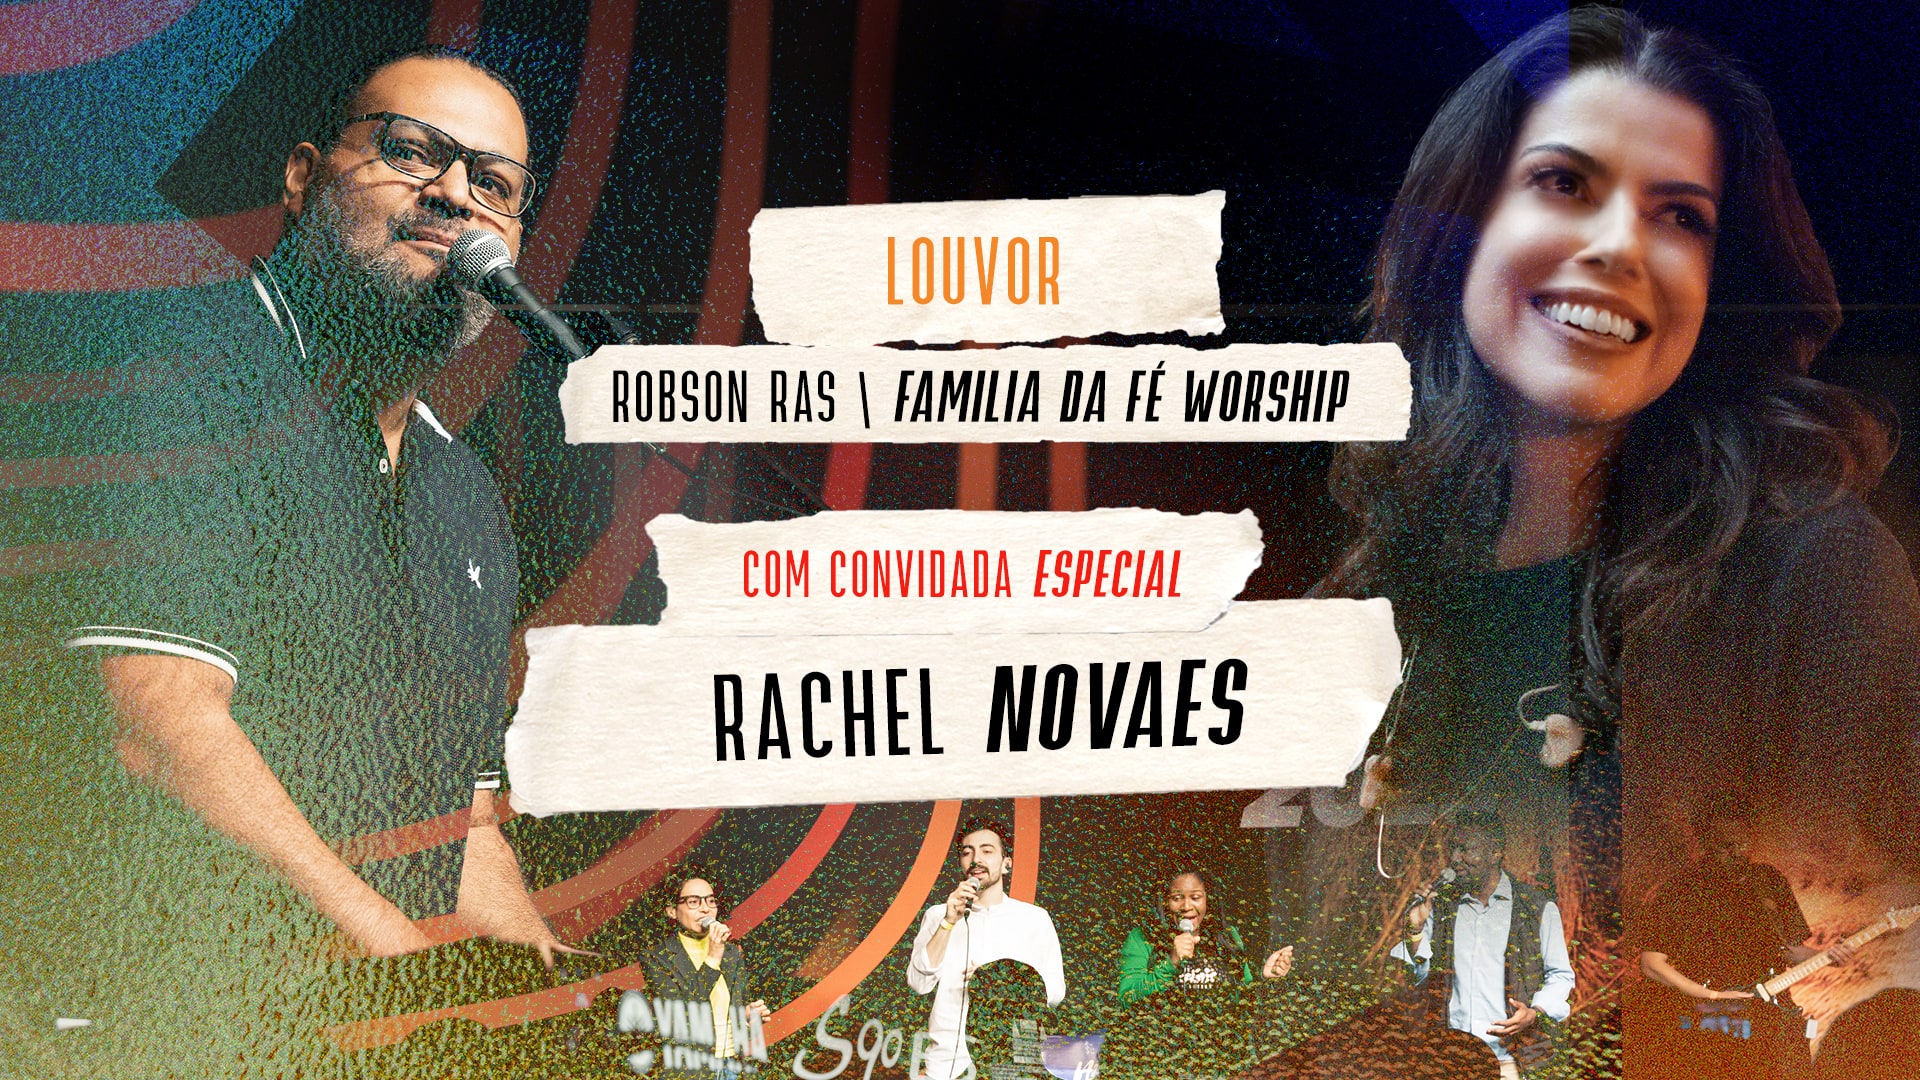 Louvor: Robson Ras da Família da Fé Worship com convidada especial Rachel Novaes